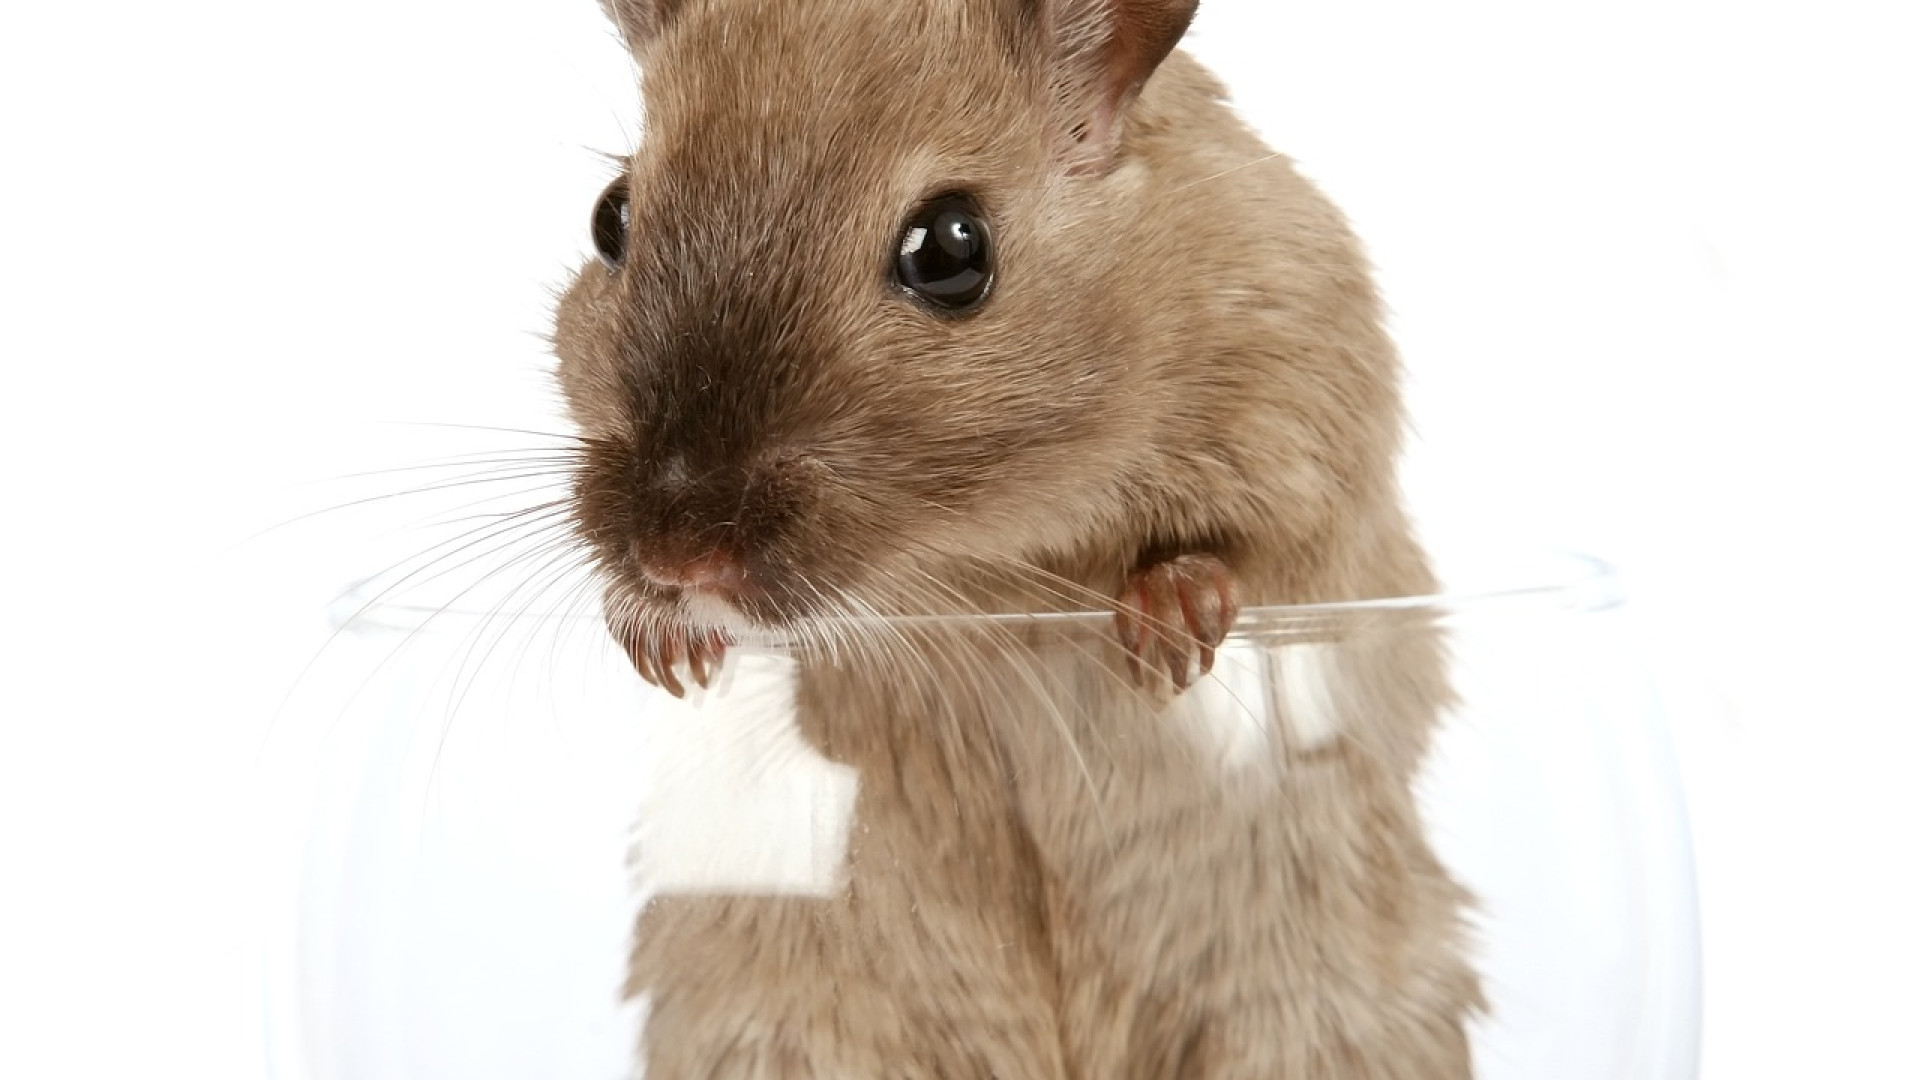 Entreprise à Grenobles : comment éliminer les rats de vos locaux ?